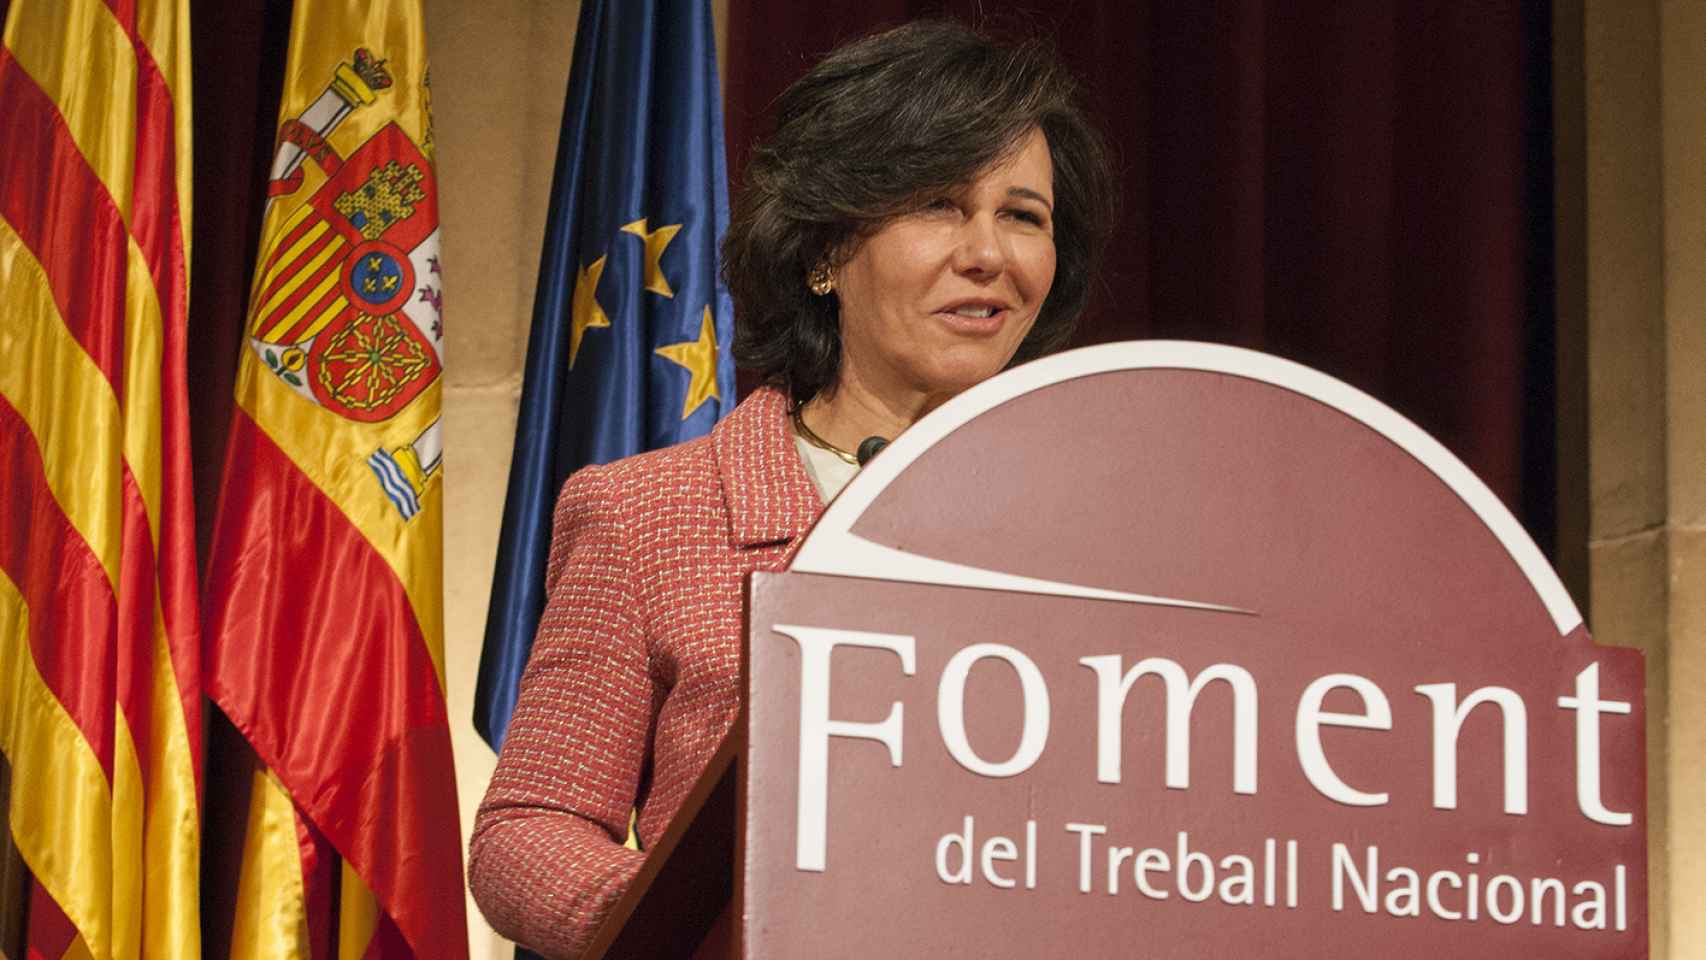 La presidenta del Santander, Ana Botín, durante el discurso ante los miembros de Foment del Treball Nacional.